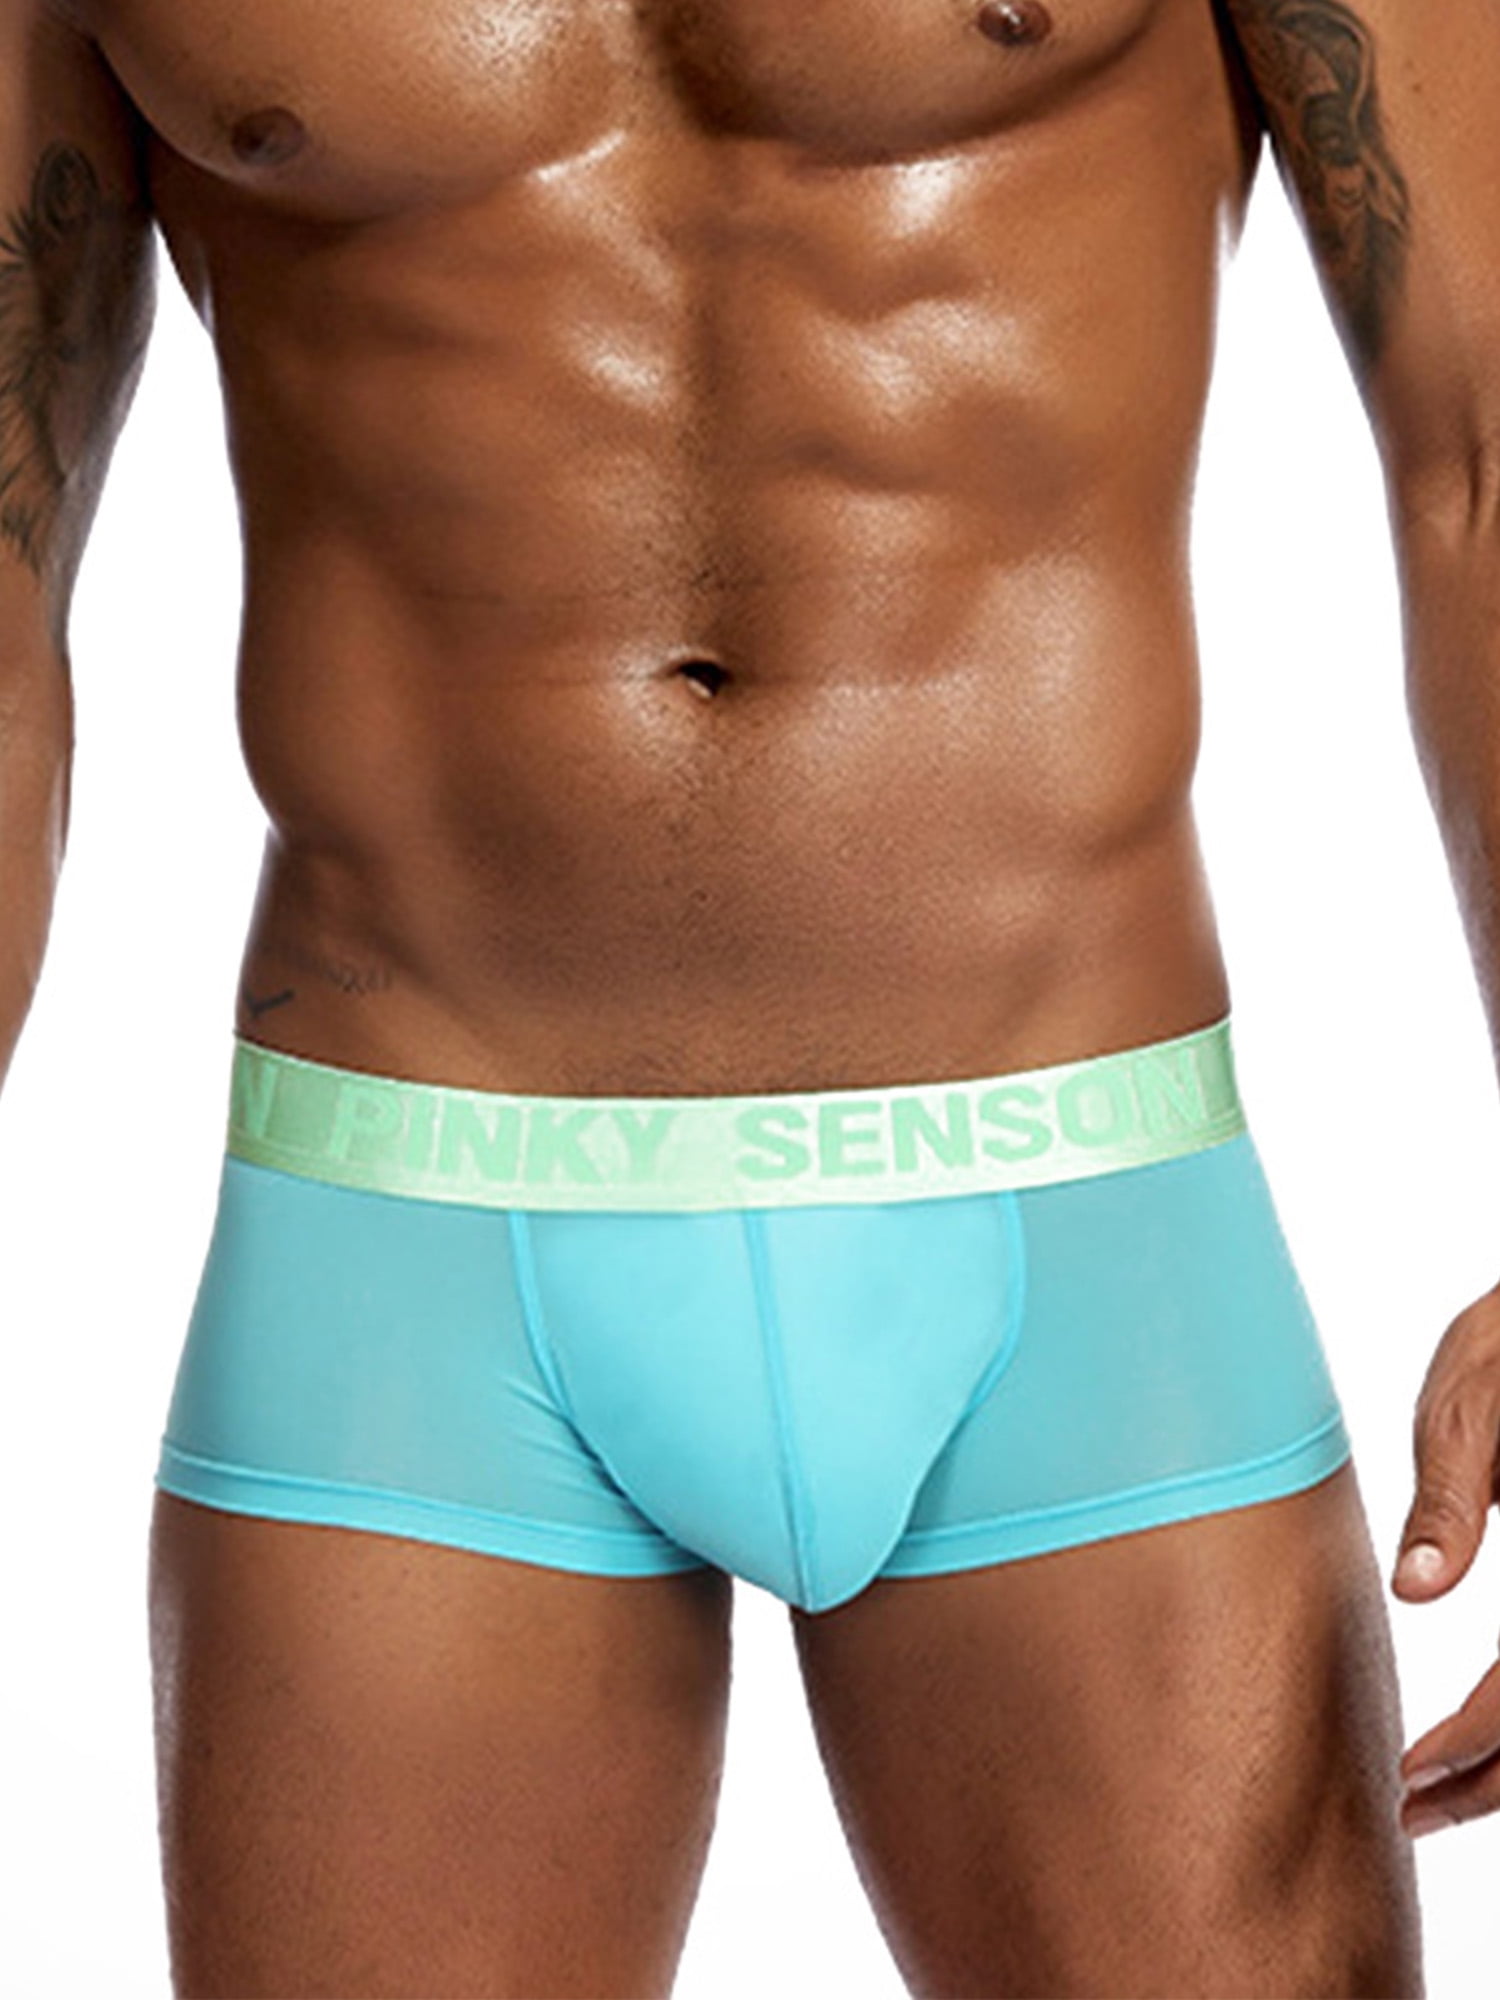 Men's Short Leg Boxer Briefs Underwear Bulge Pouch Breathable Lingerie Panties 